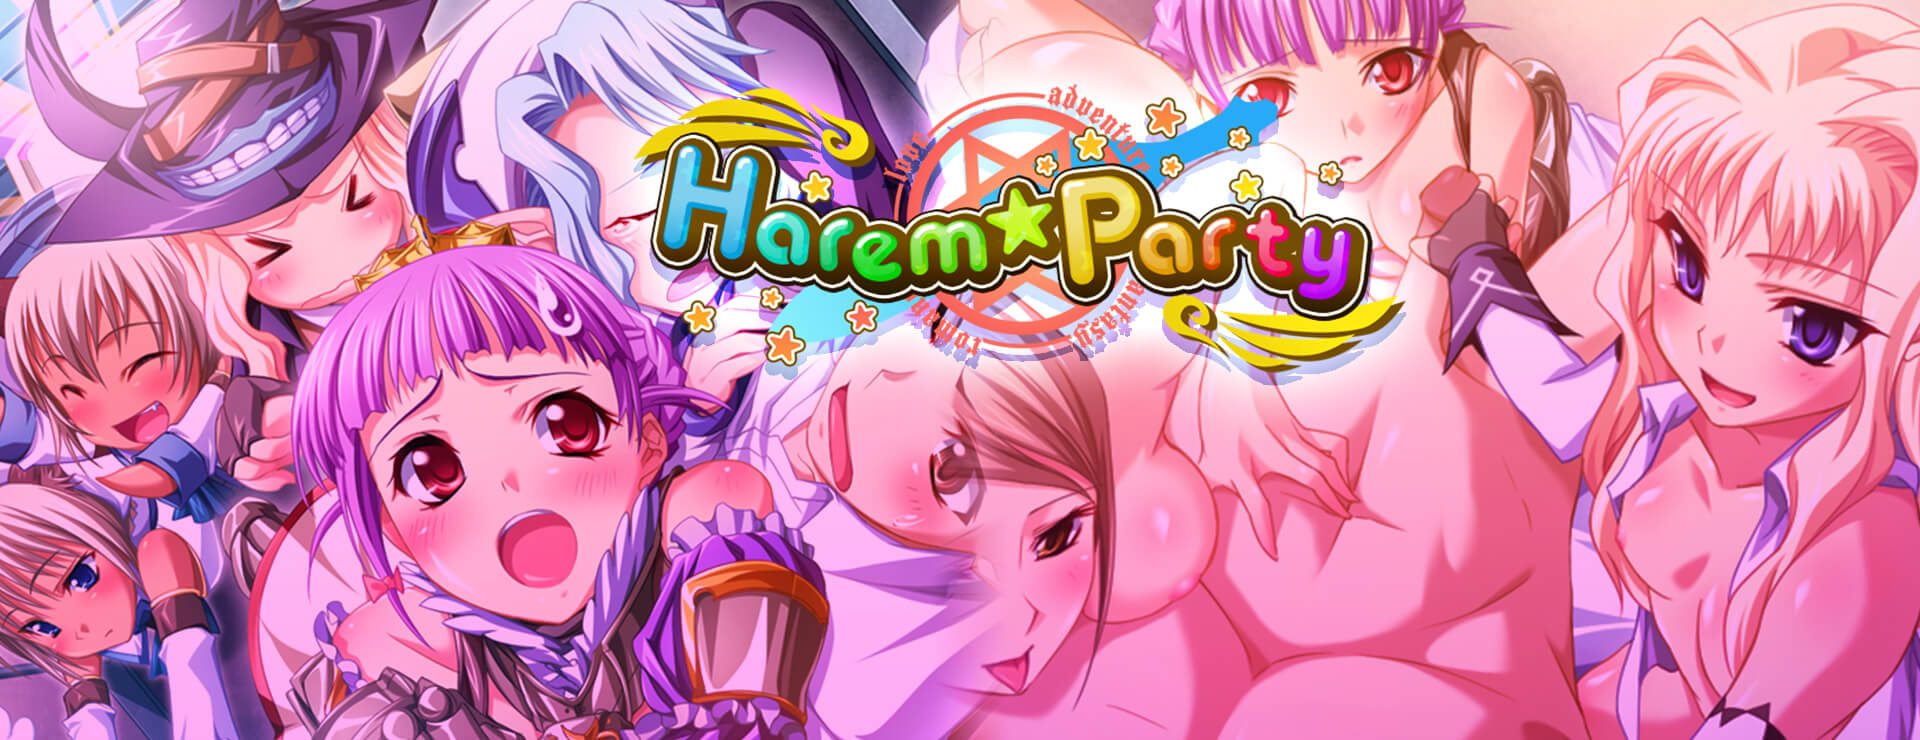 Harem Party - Visual Novel Game